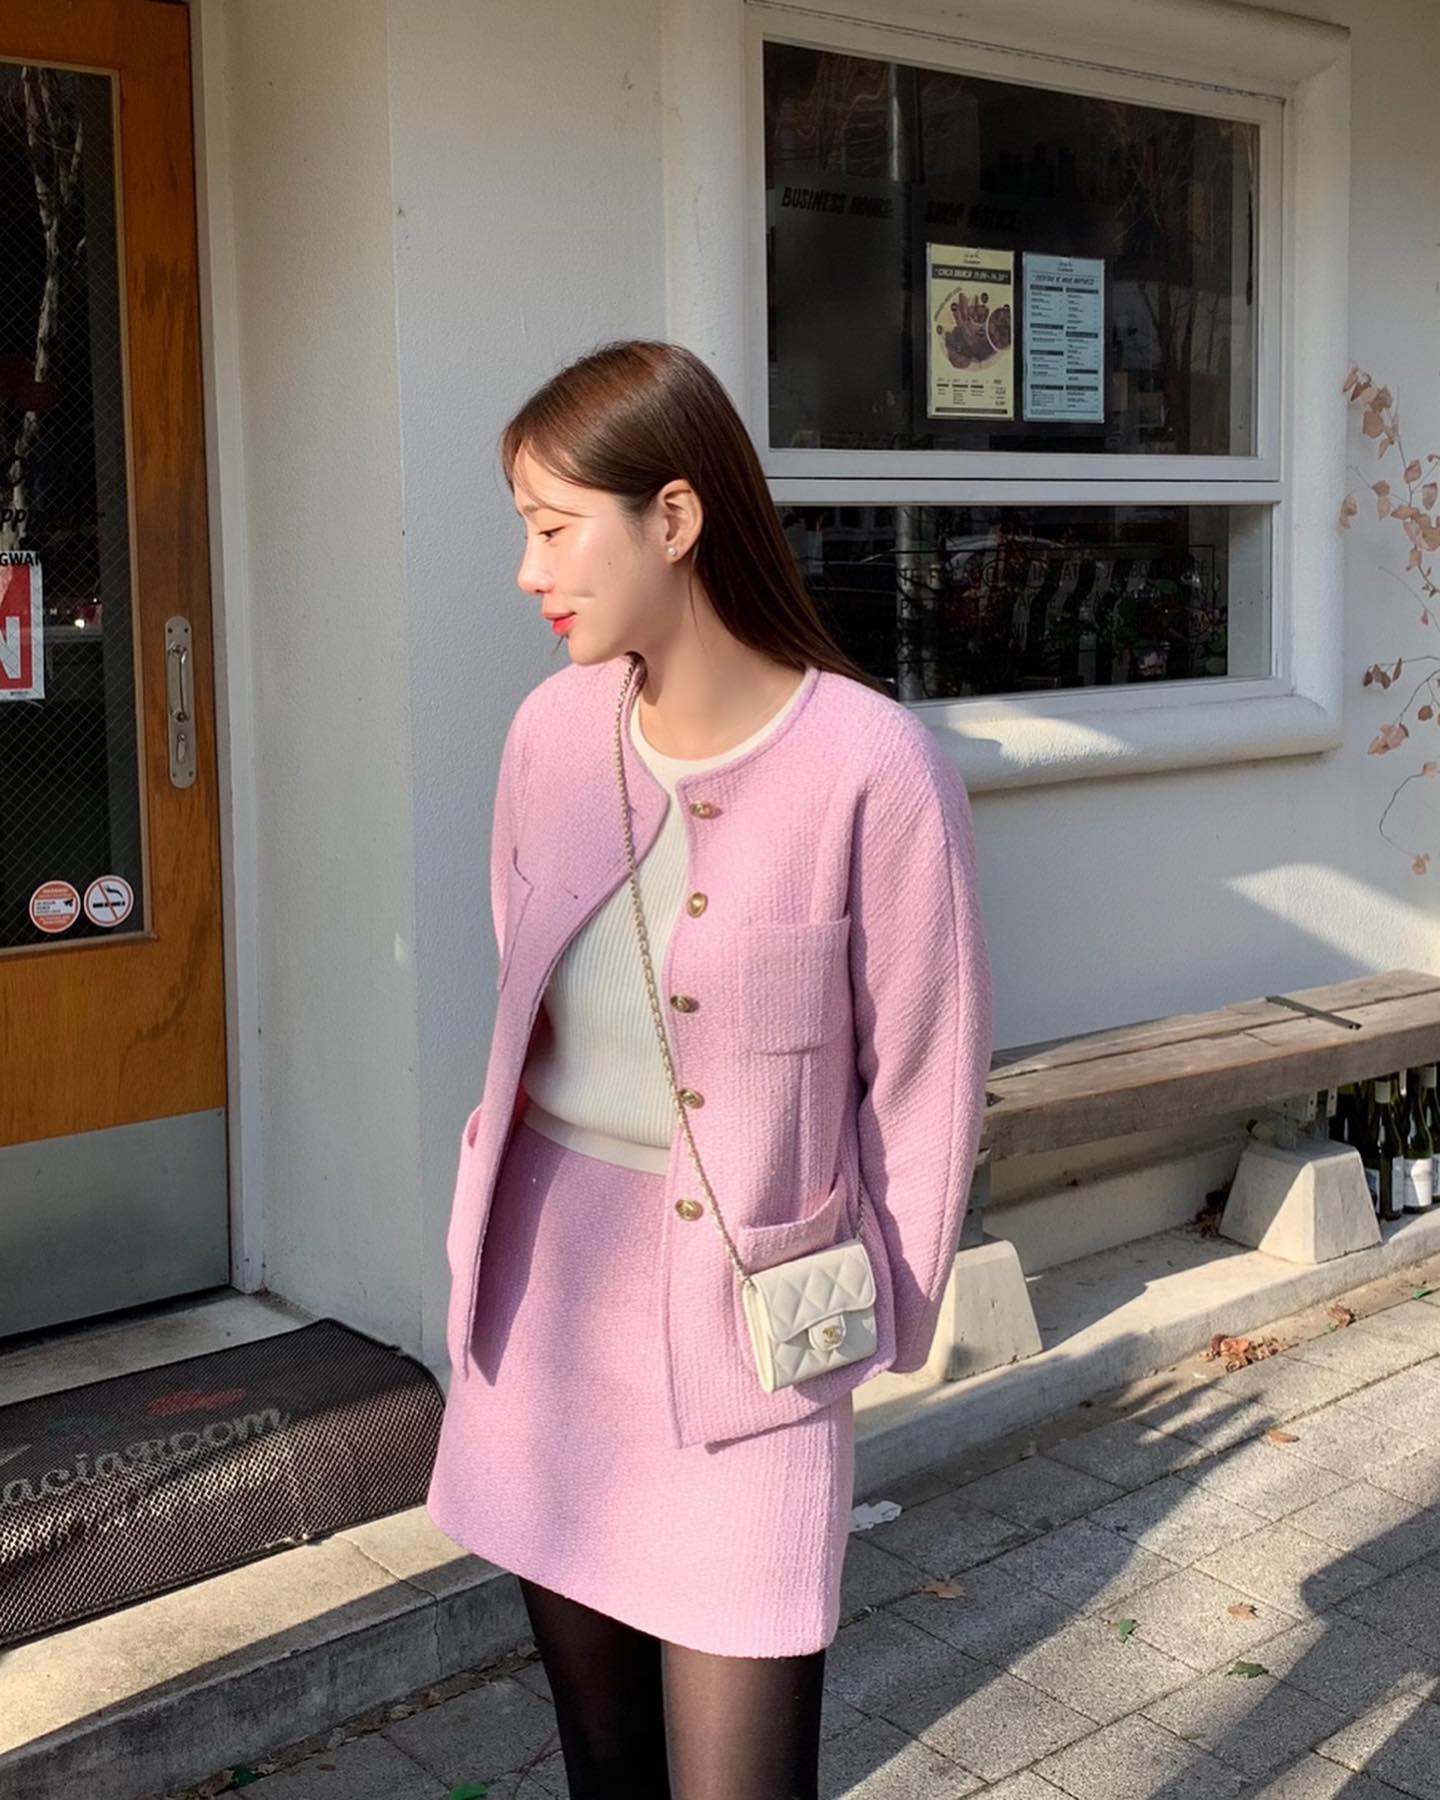 Mặc mini-jupe đi làm, mỹ nữ Đài Loan khiến đồng nghiệp chú ý vì điểm này